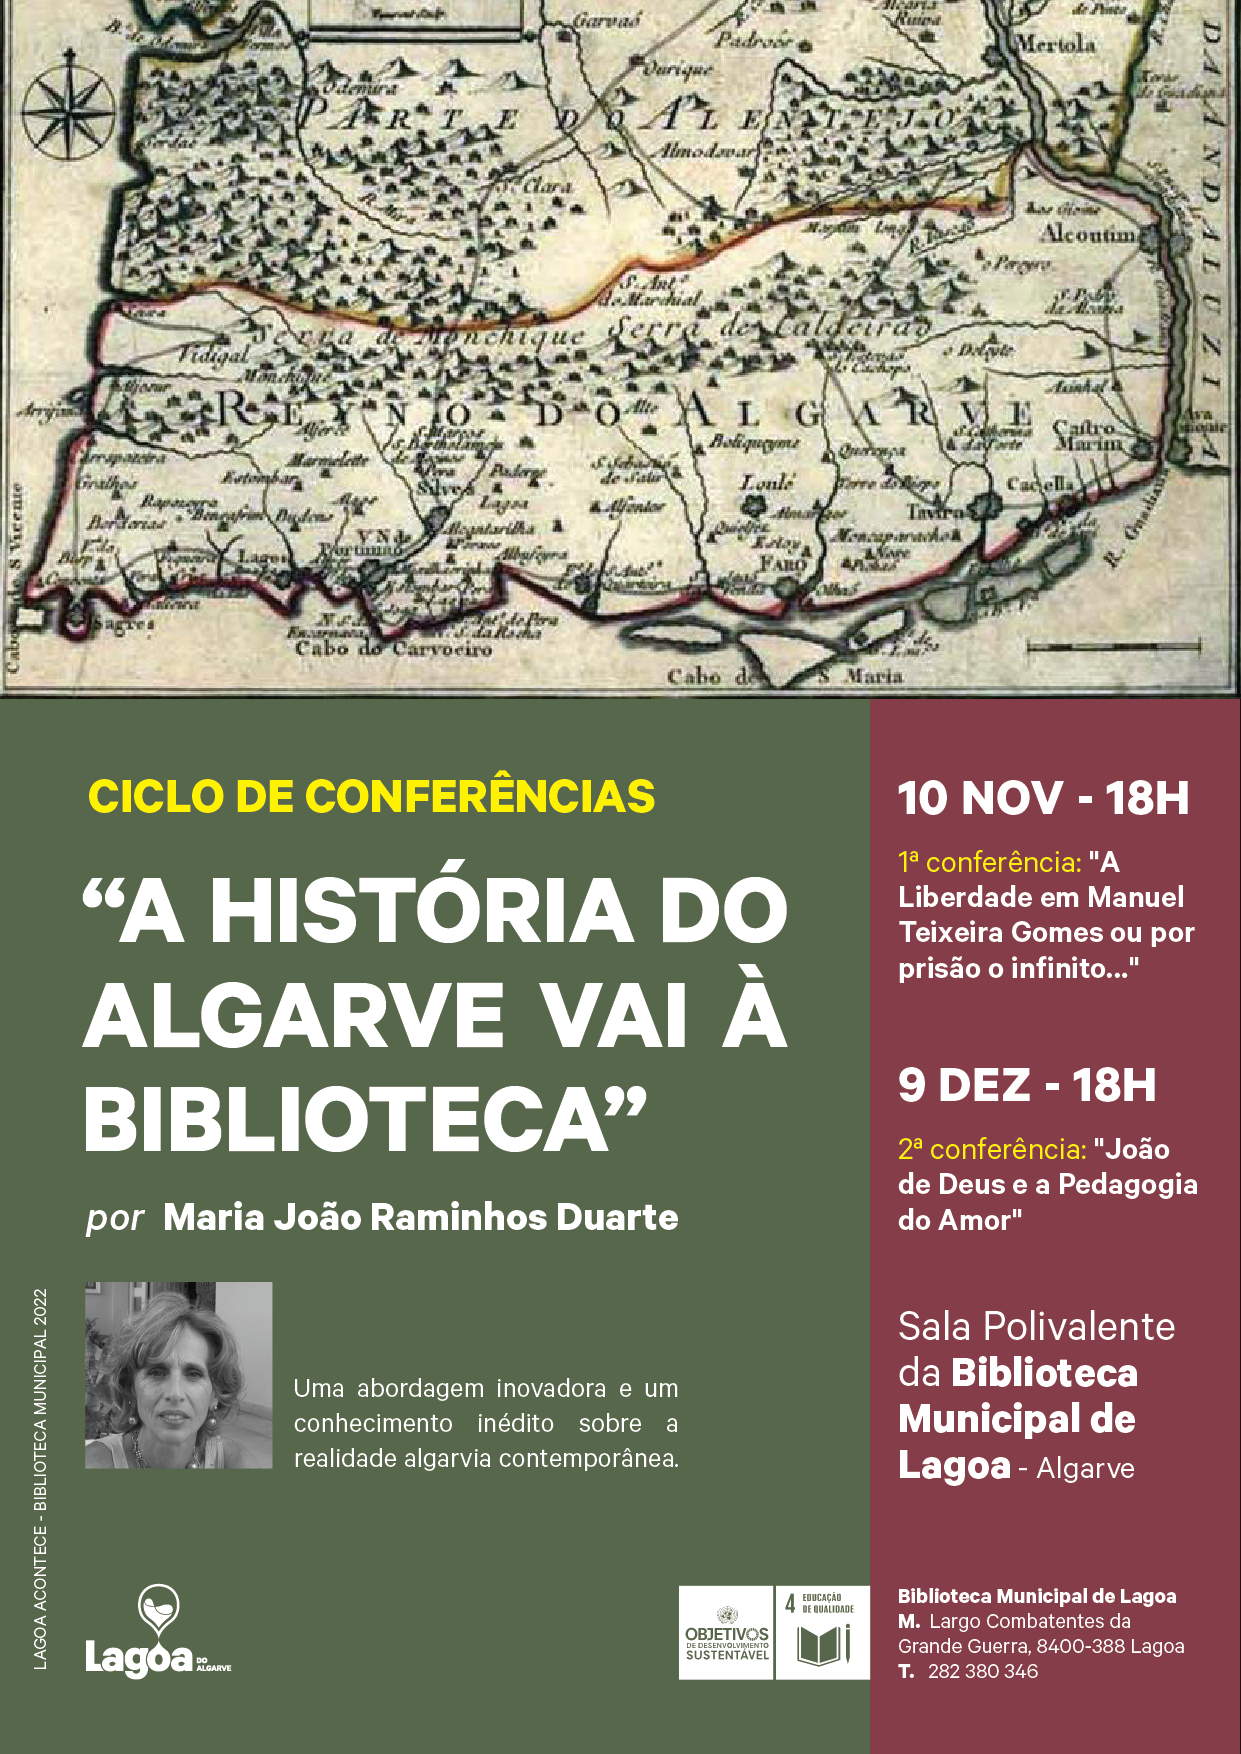 Ciclo de Conferências "A História do Algarve vai à Biblioteca"